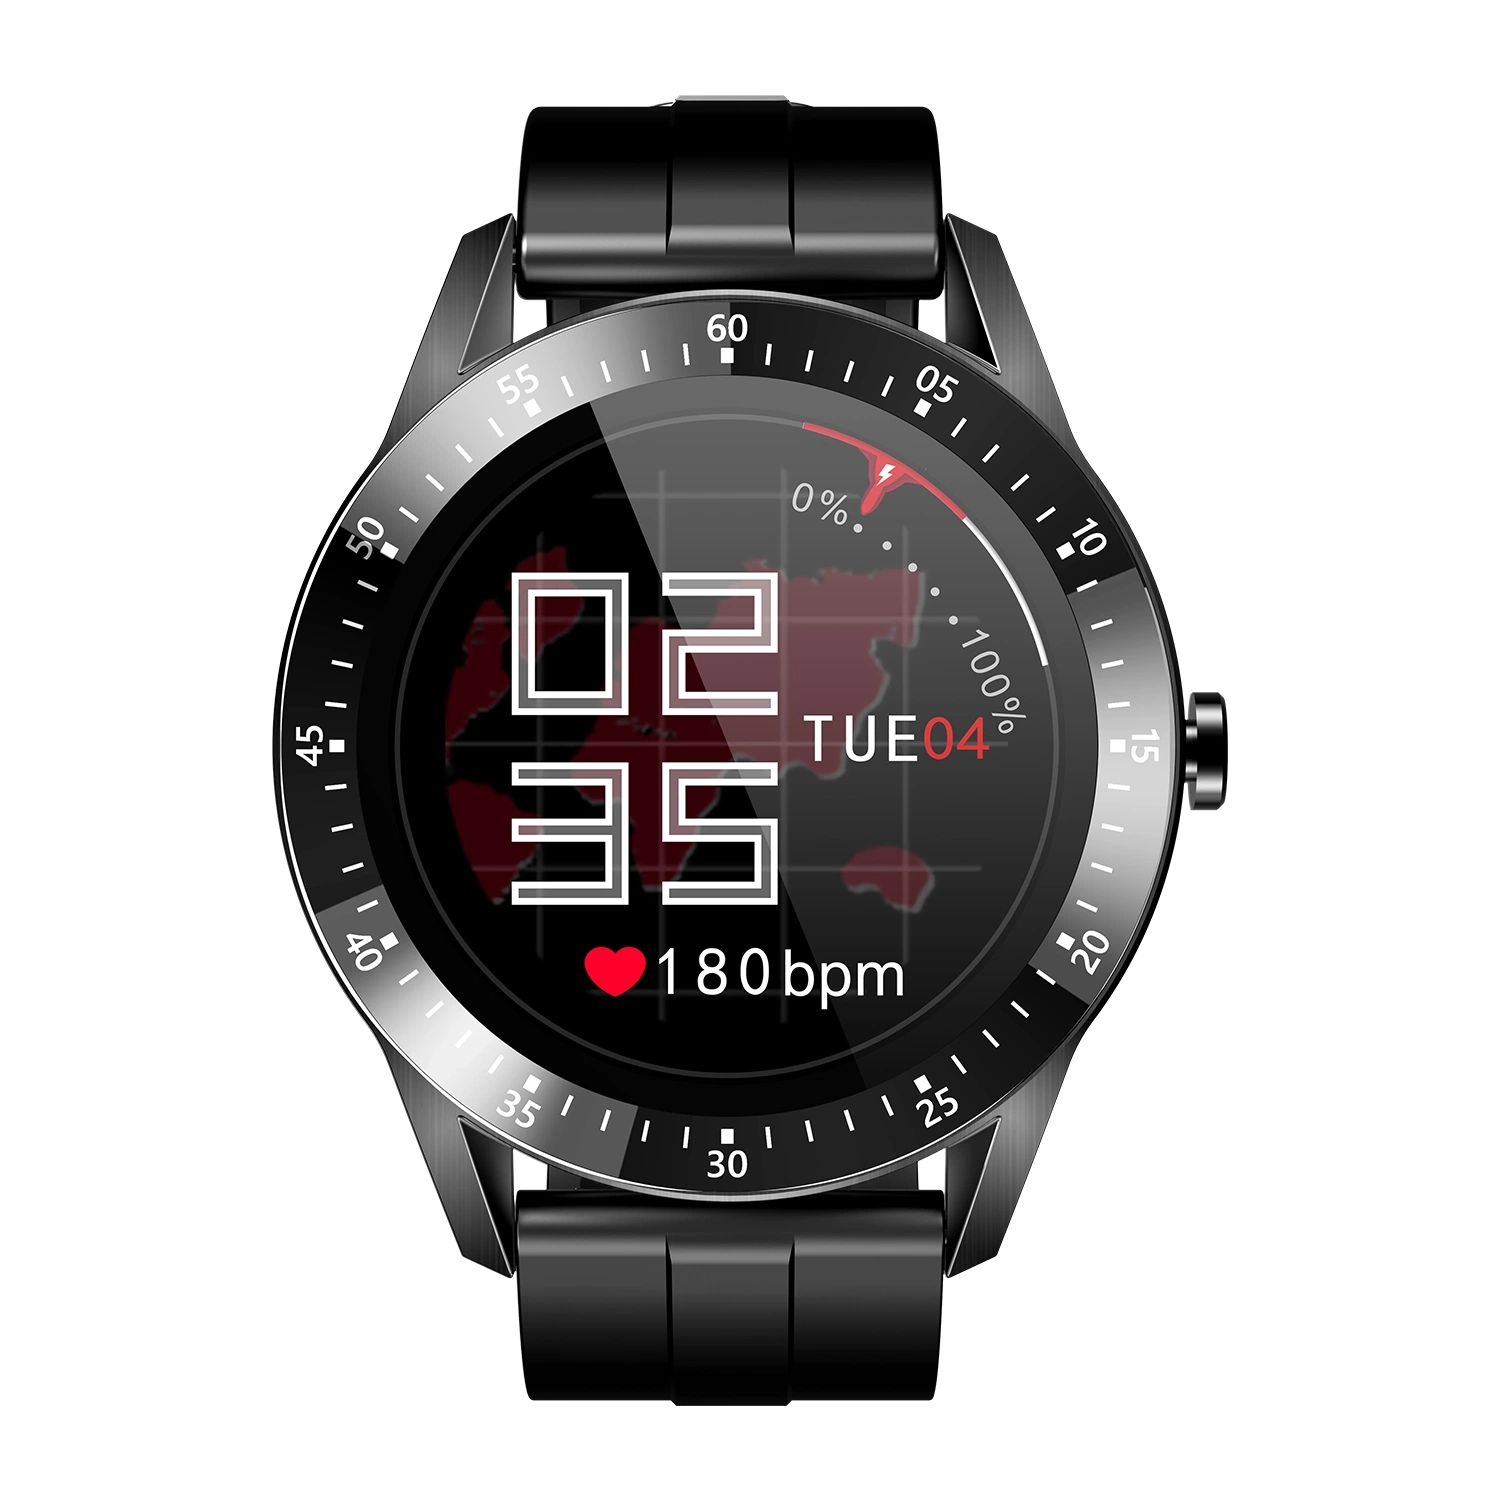 Часы Global Hot Sale Vg17 Smart Watch, спортивный педометр, пульс и мониторинг артериального давления Smart Bracelet